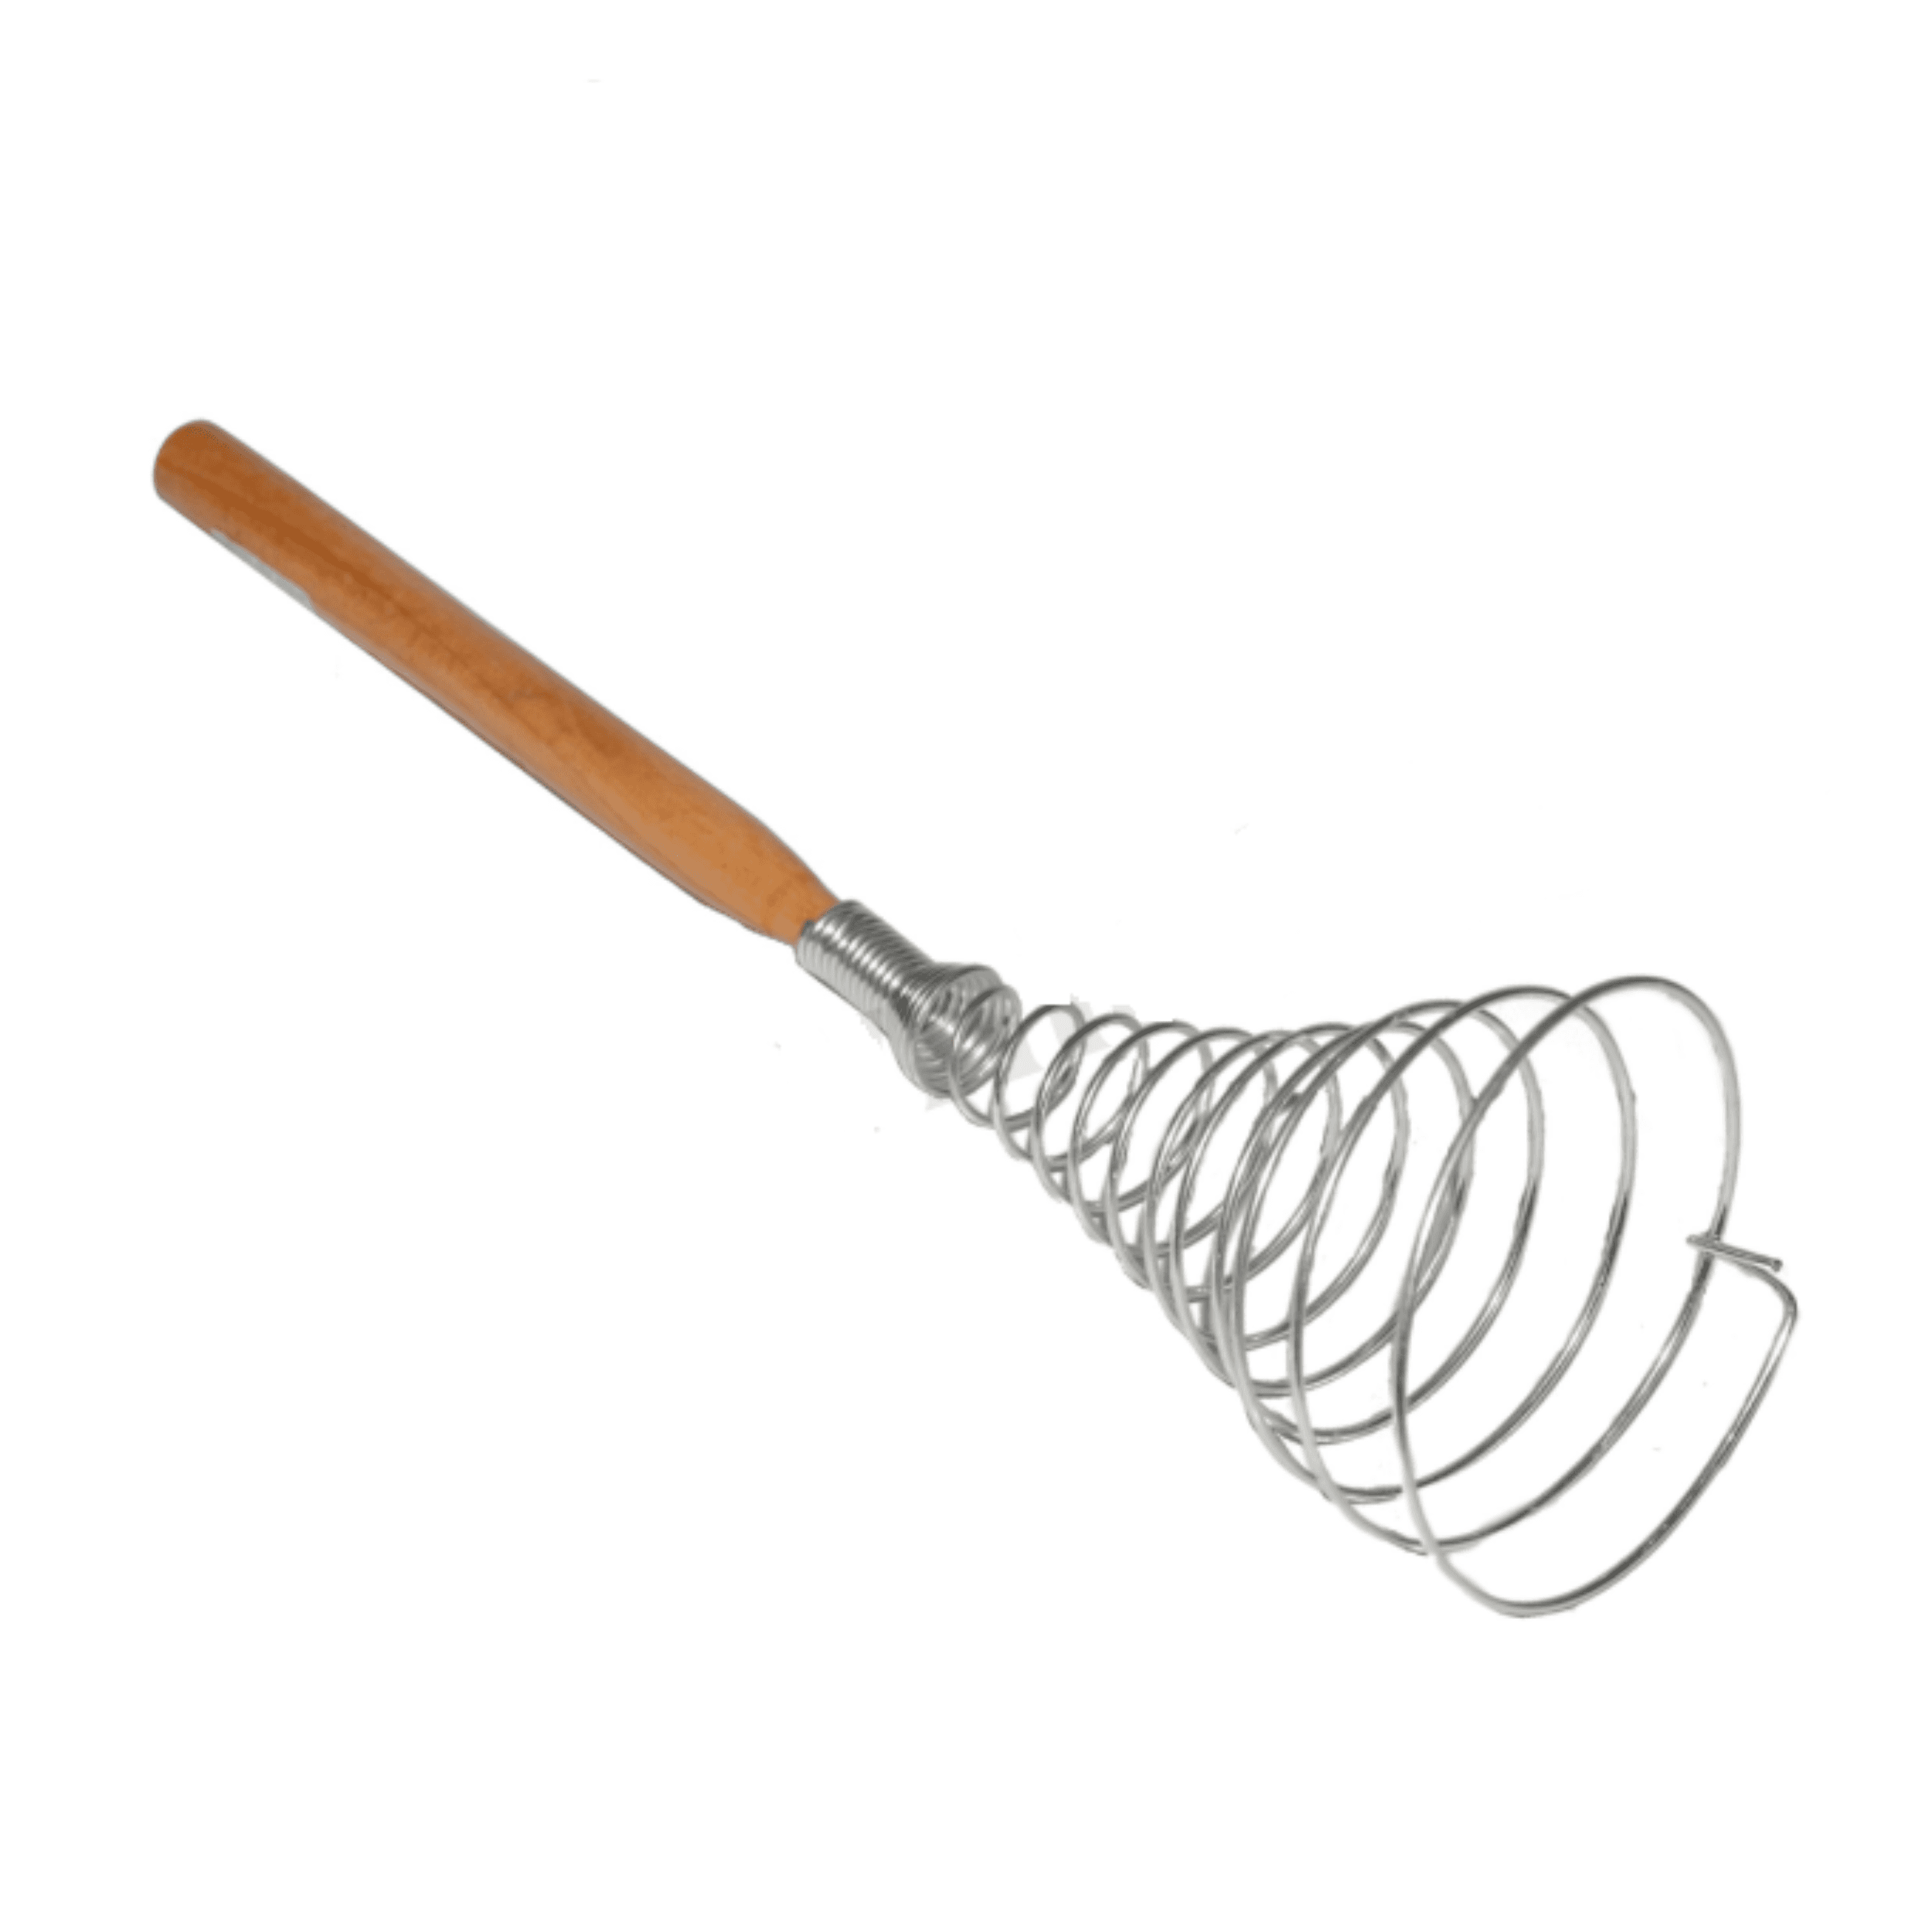 Ubijaczka kuchenna – spirala, 30 cm